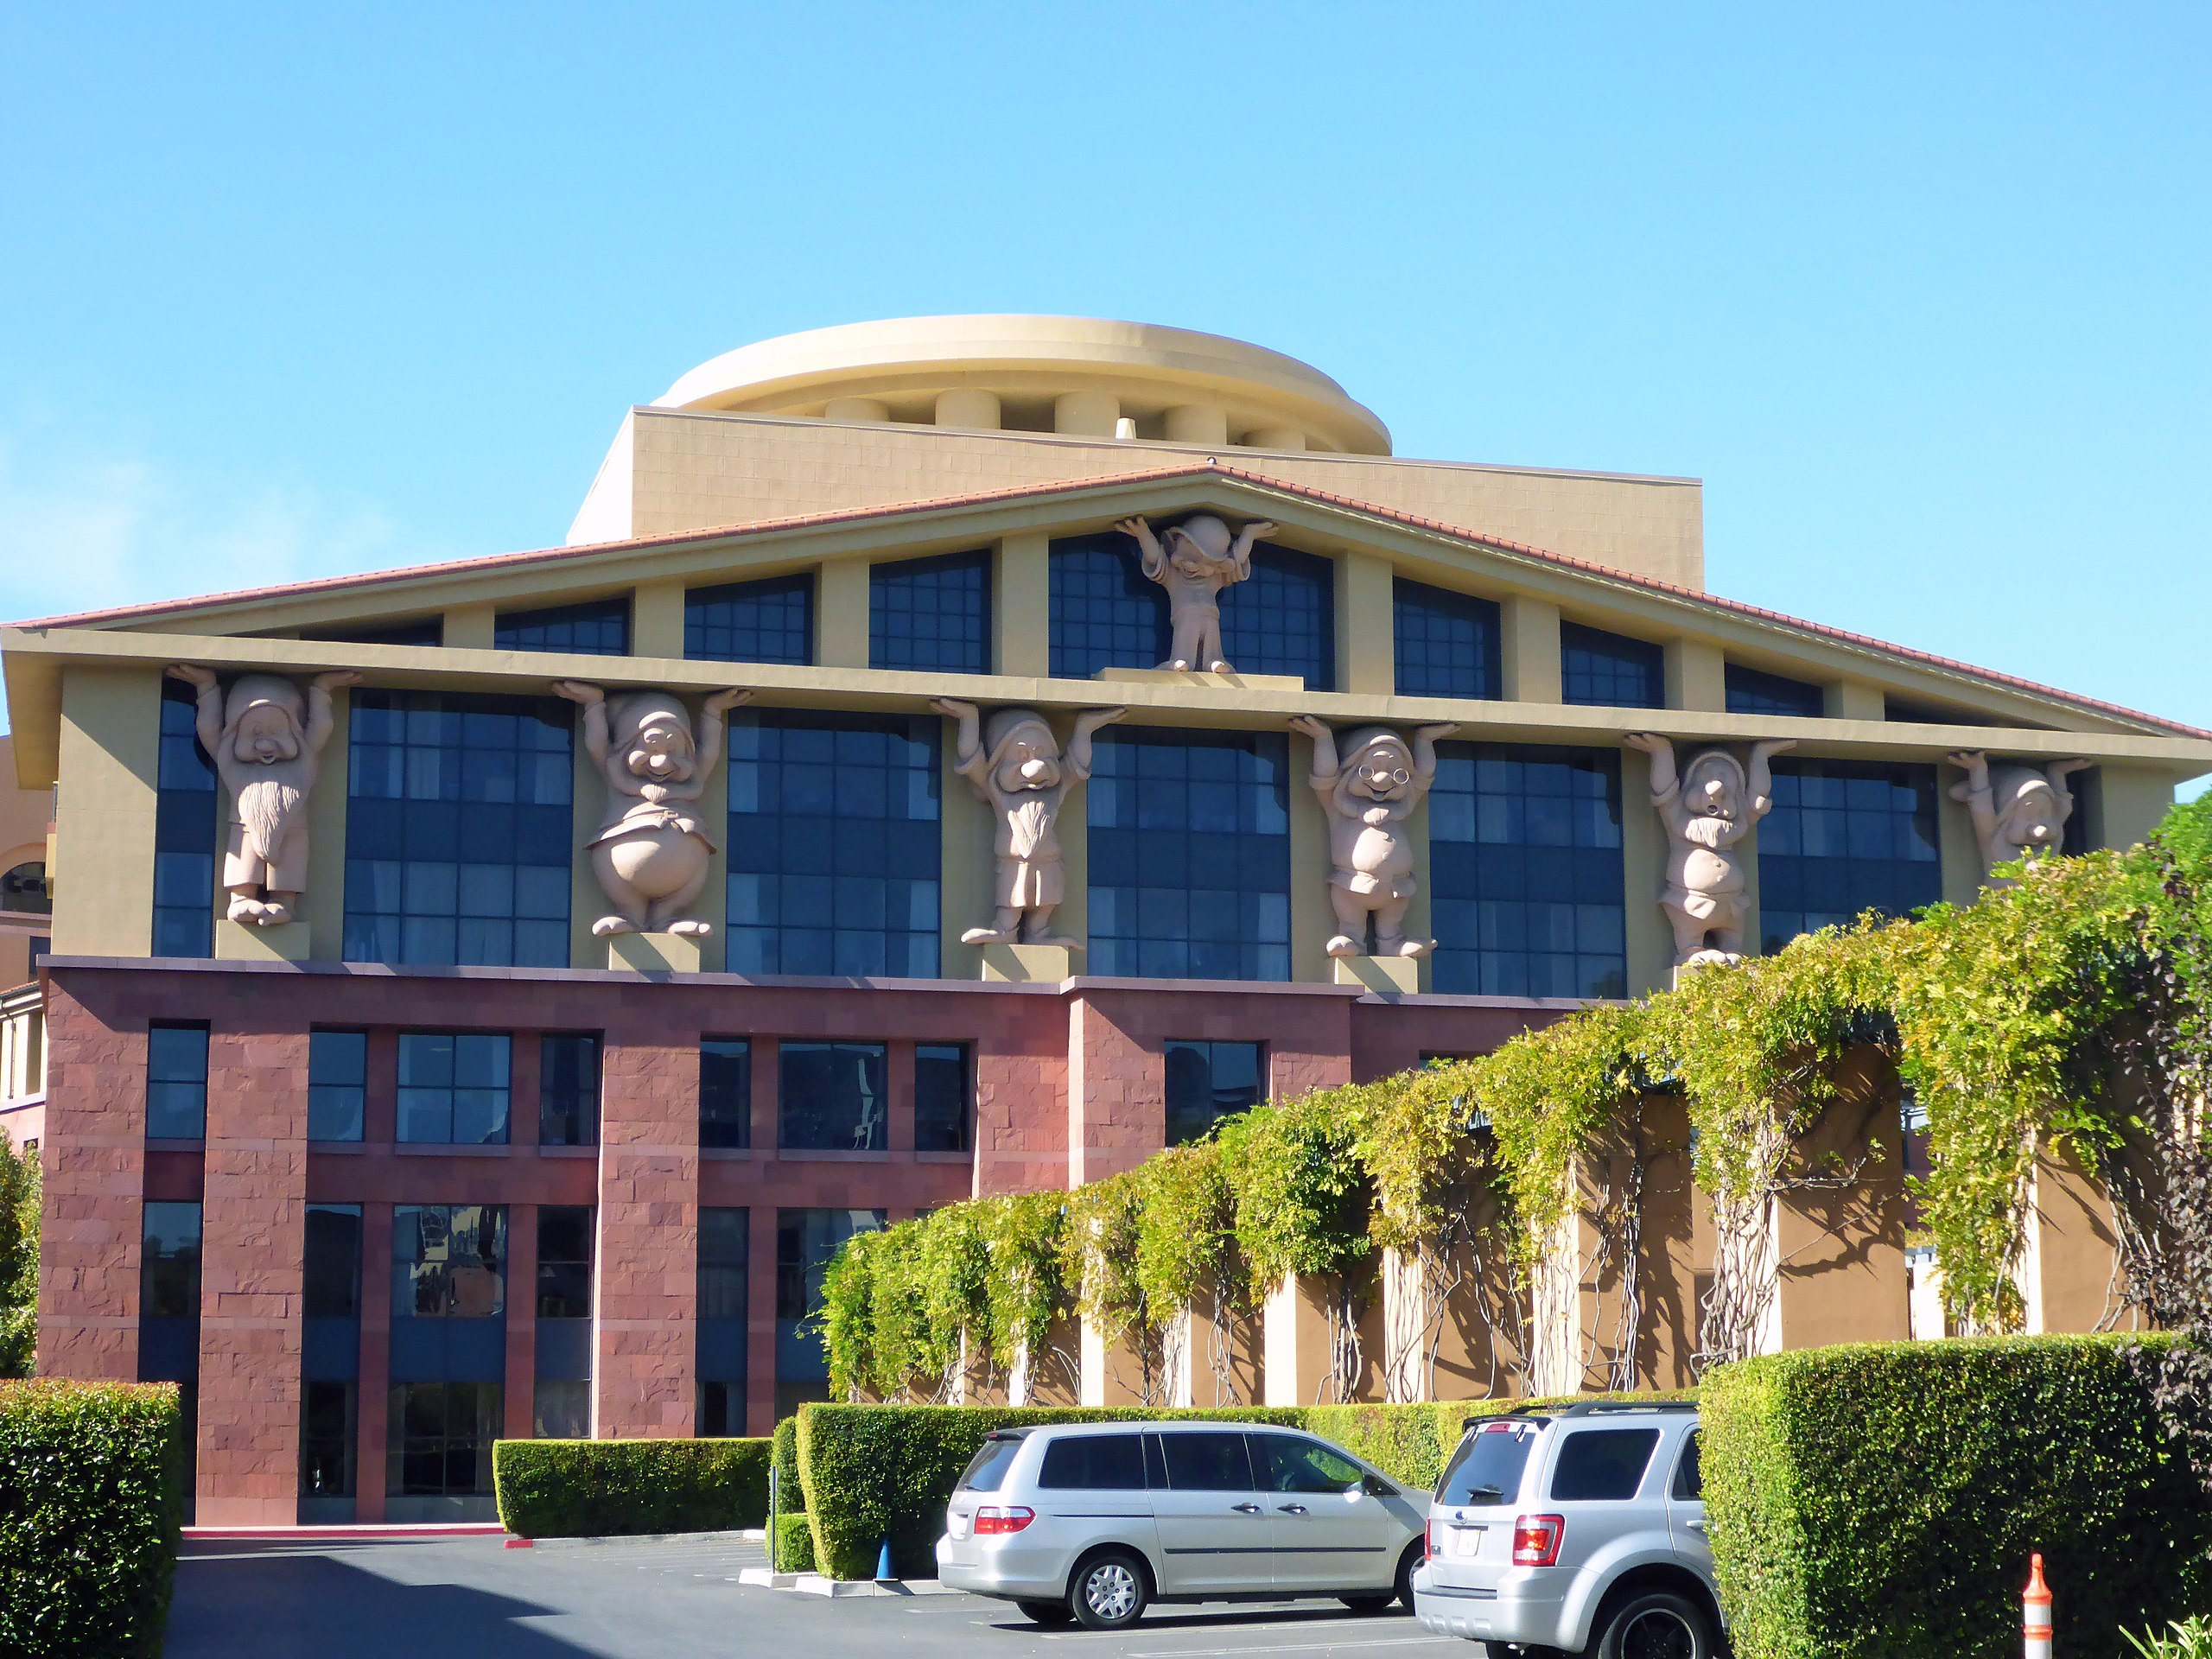 Будівля Дісней в Каліфорнї архітектура постмодернізм гноми